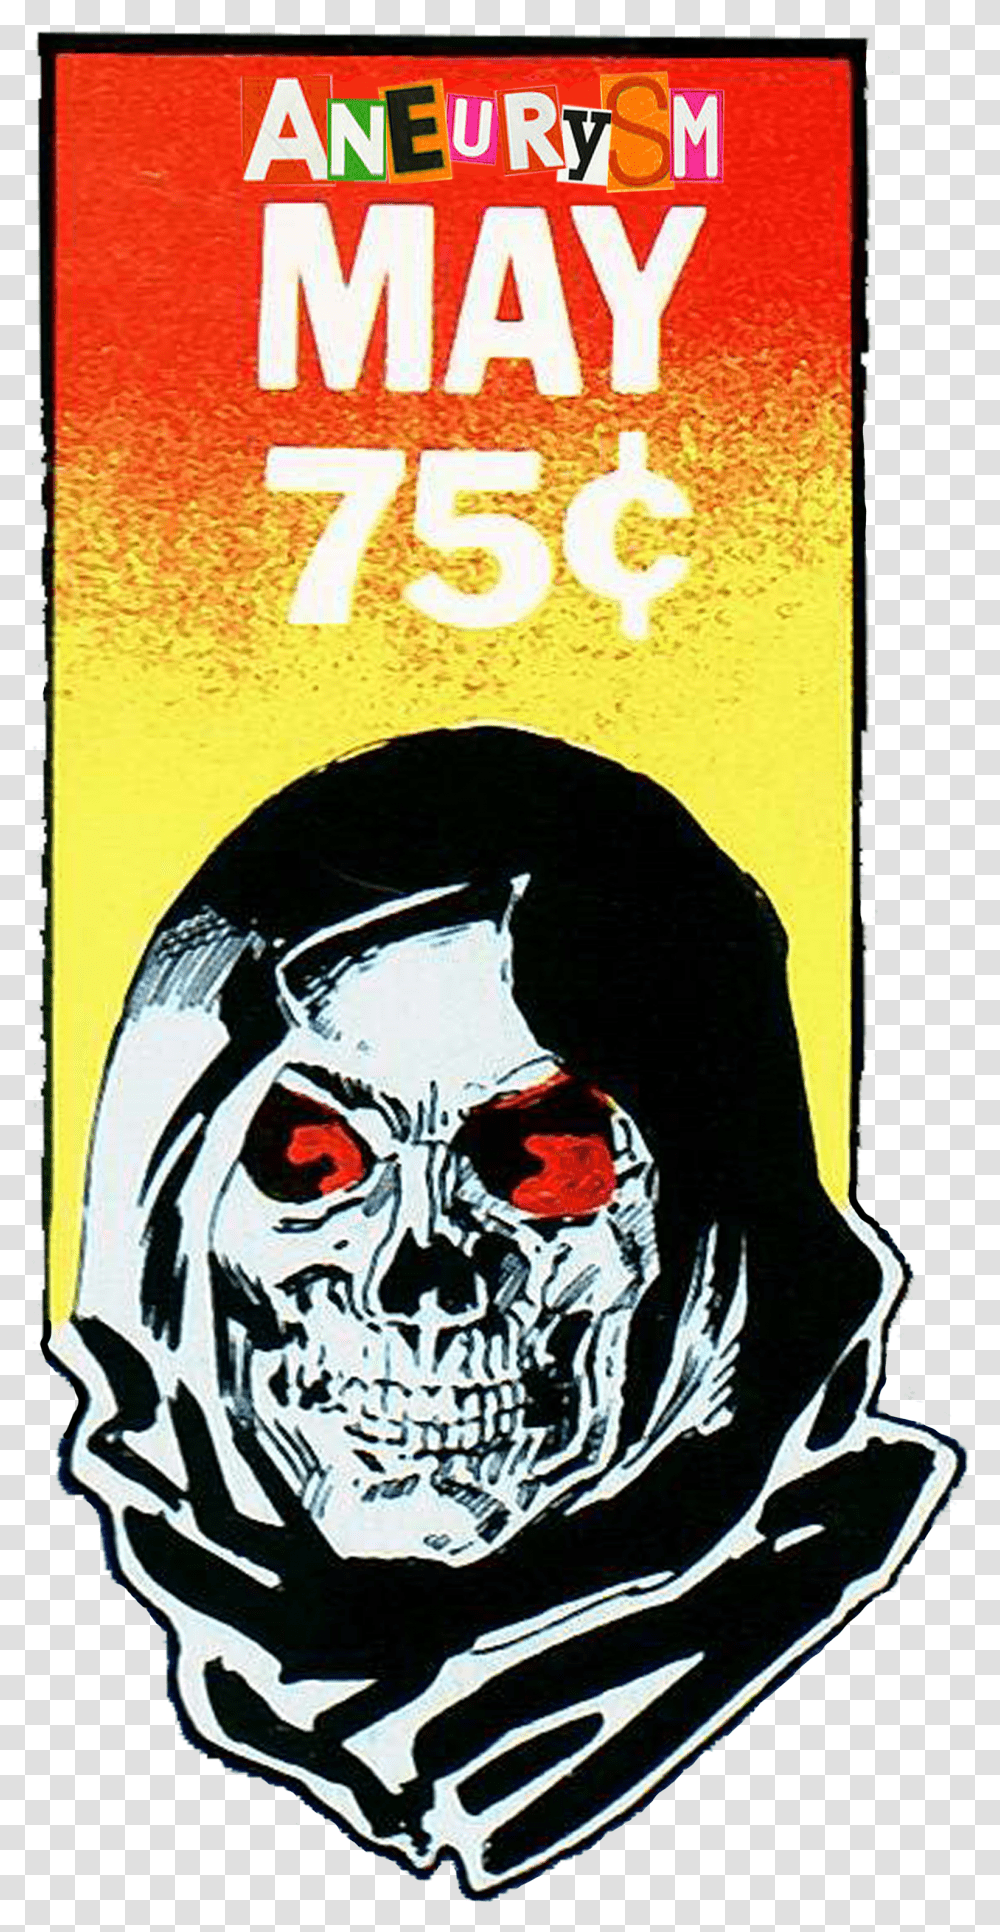 Image Of Aneurysm Skeletor Sticker Pack Poster Transparent Png